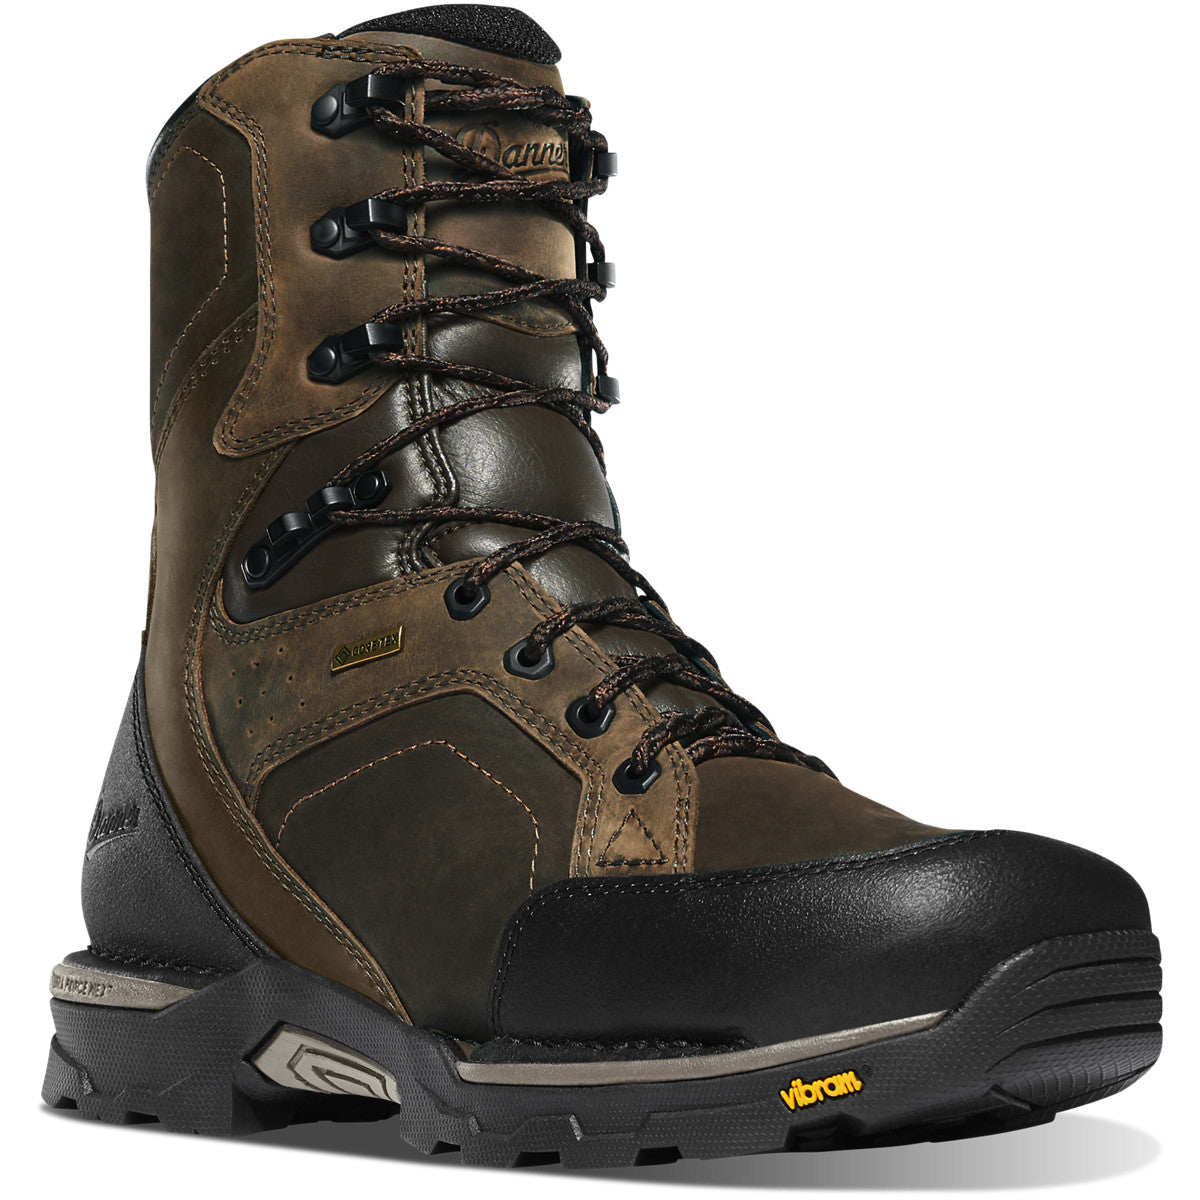 Danner Men's Crucial 8" Plain Toe Waterproof Work Boot- Brown - 15862 7 / Medium / Brown - Overlook Boots